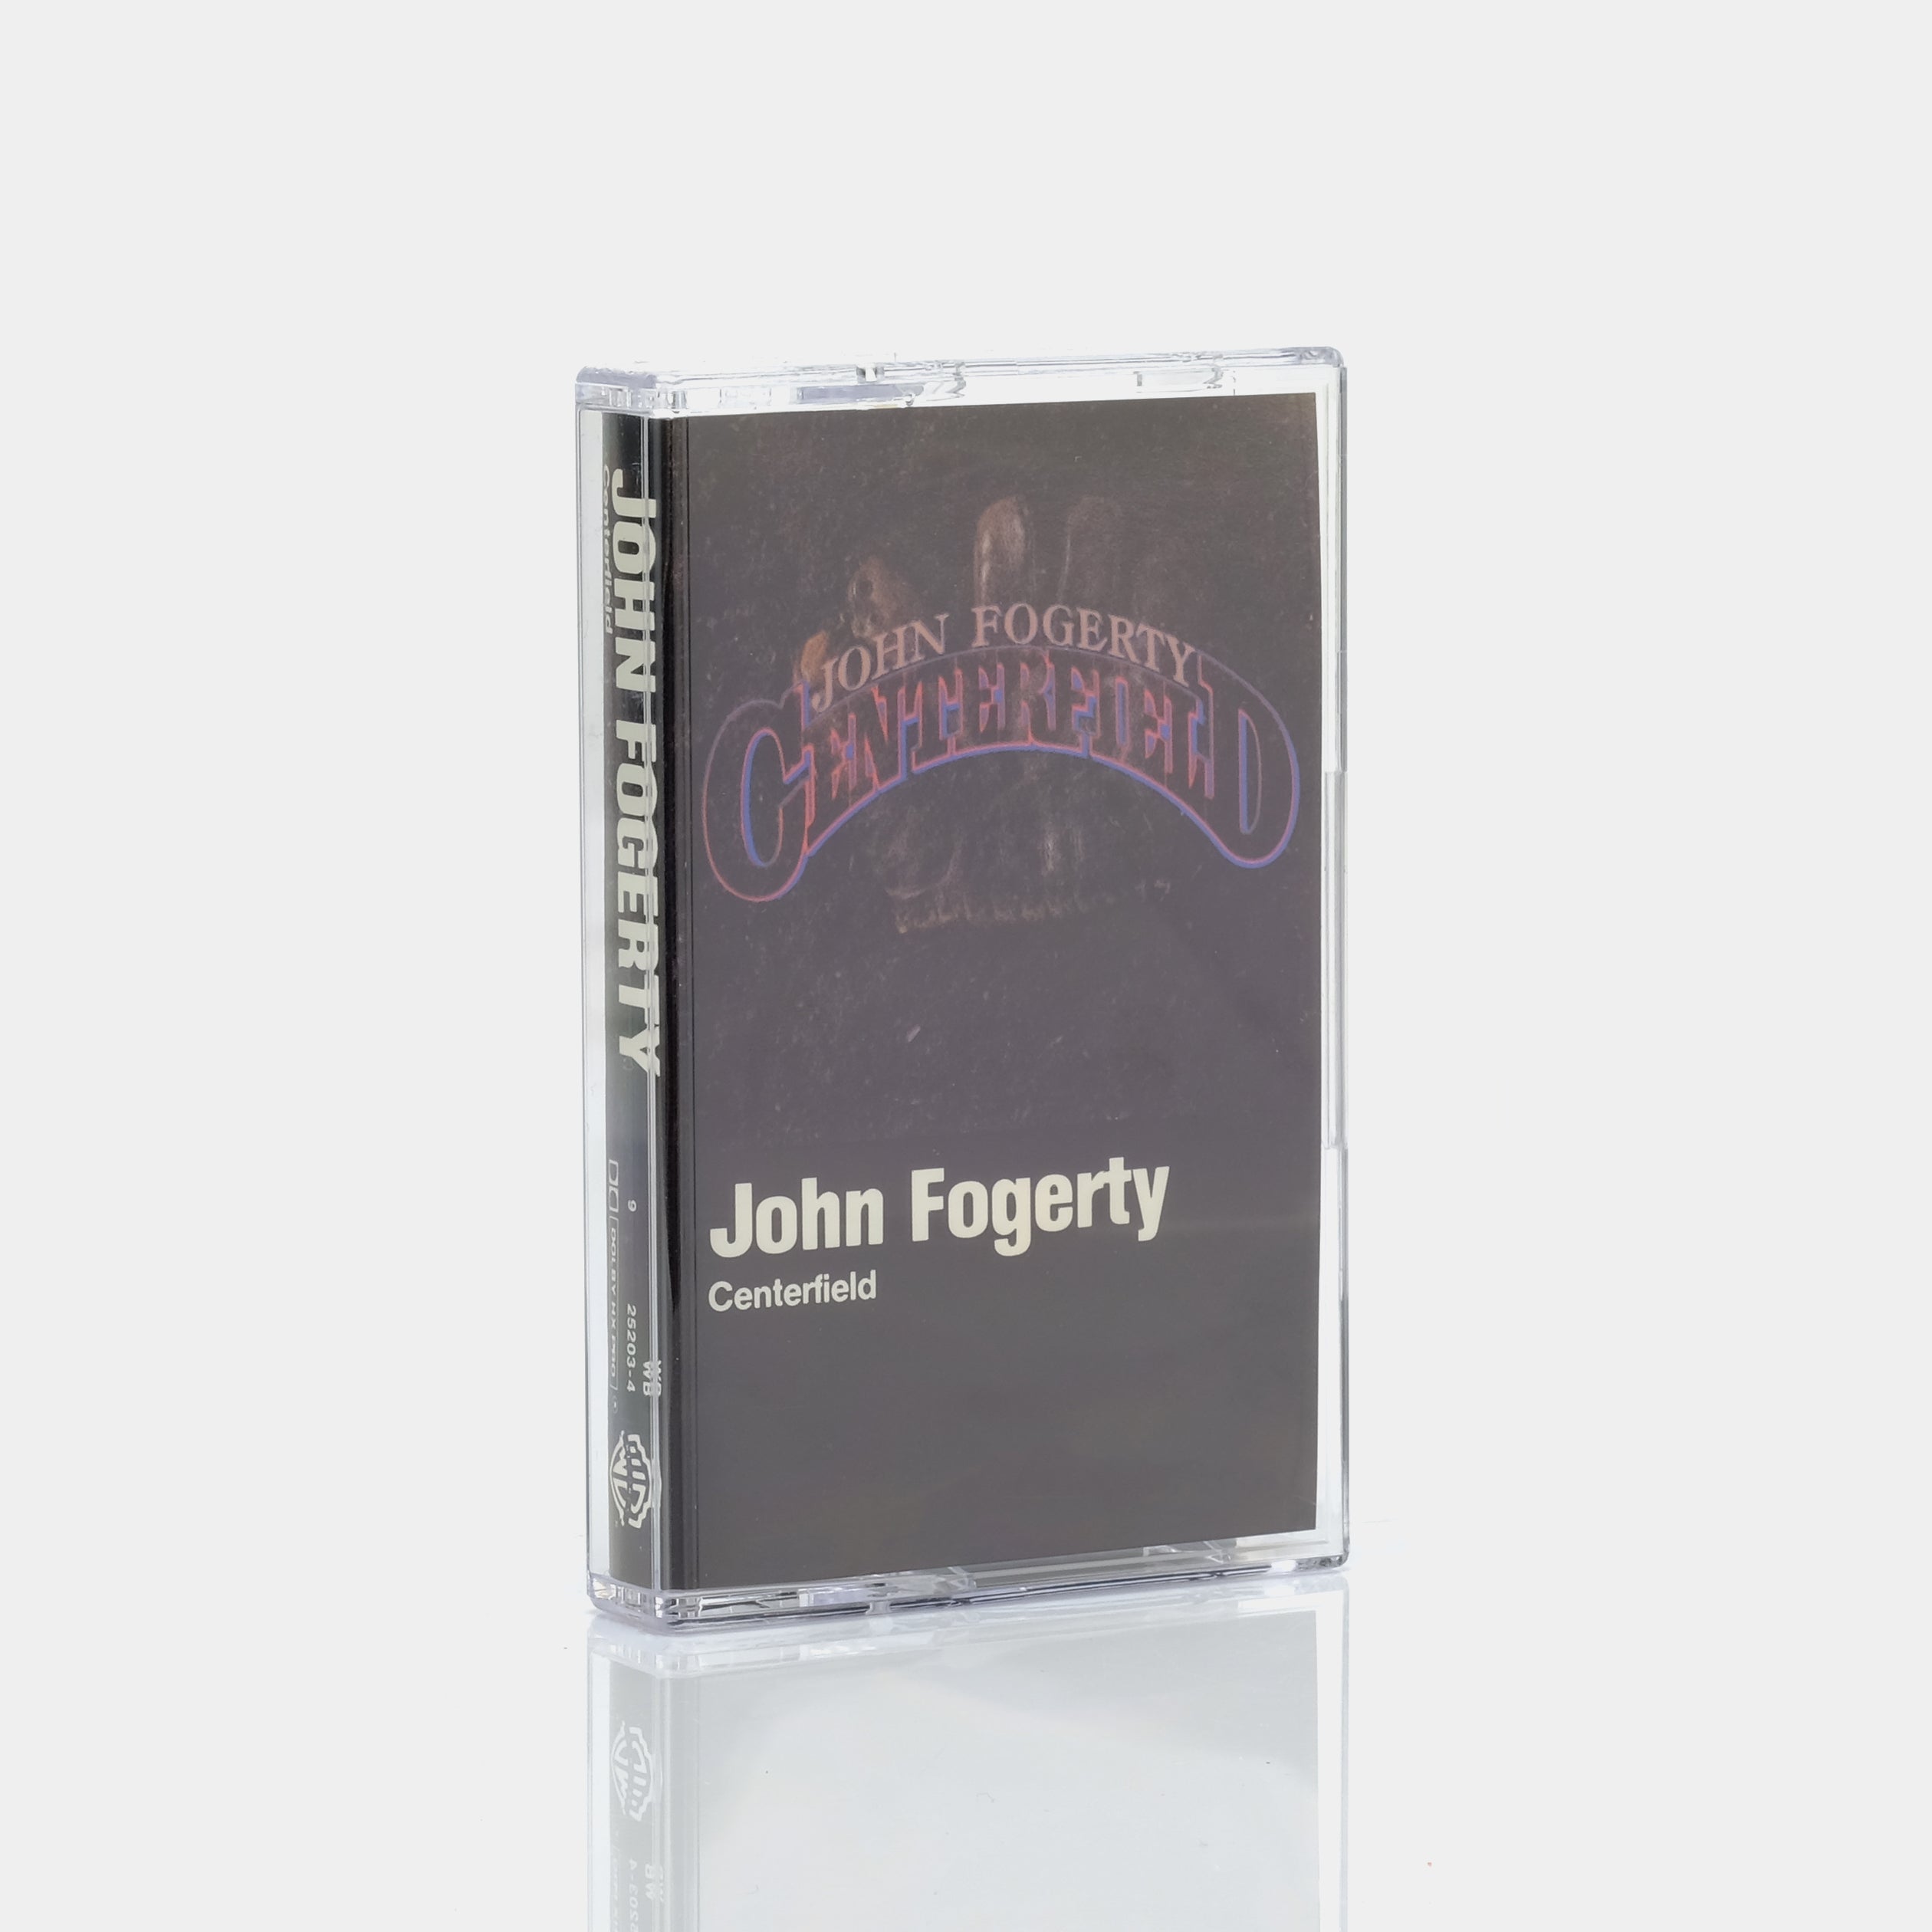 John Fogerty - Centerfield Cassette Tape